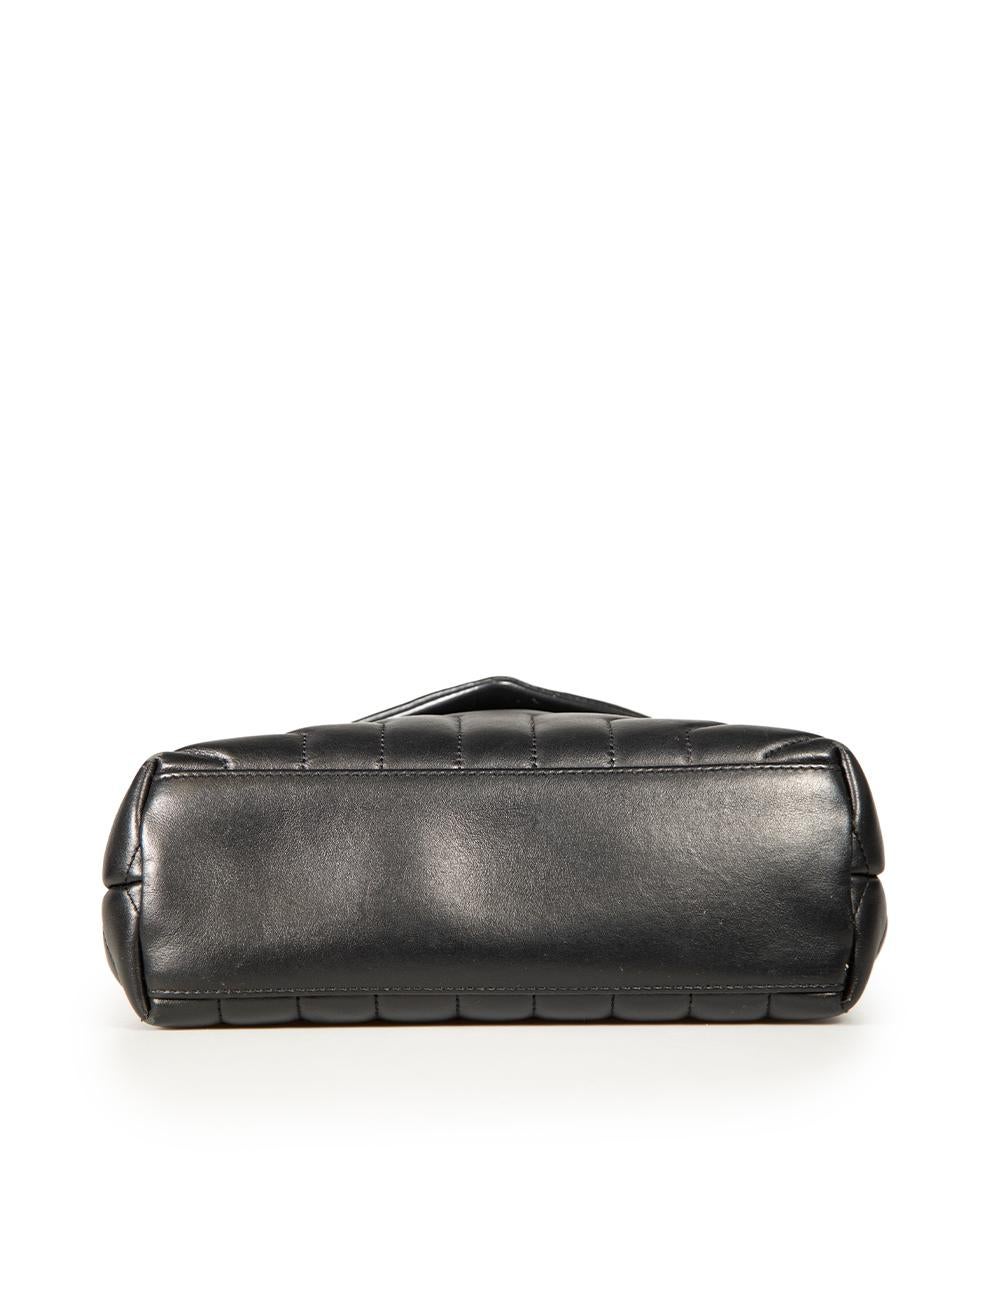 Women's Saint Laurent Black Leather Small Loulou Bag